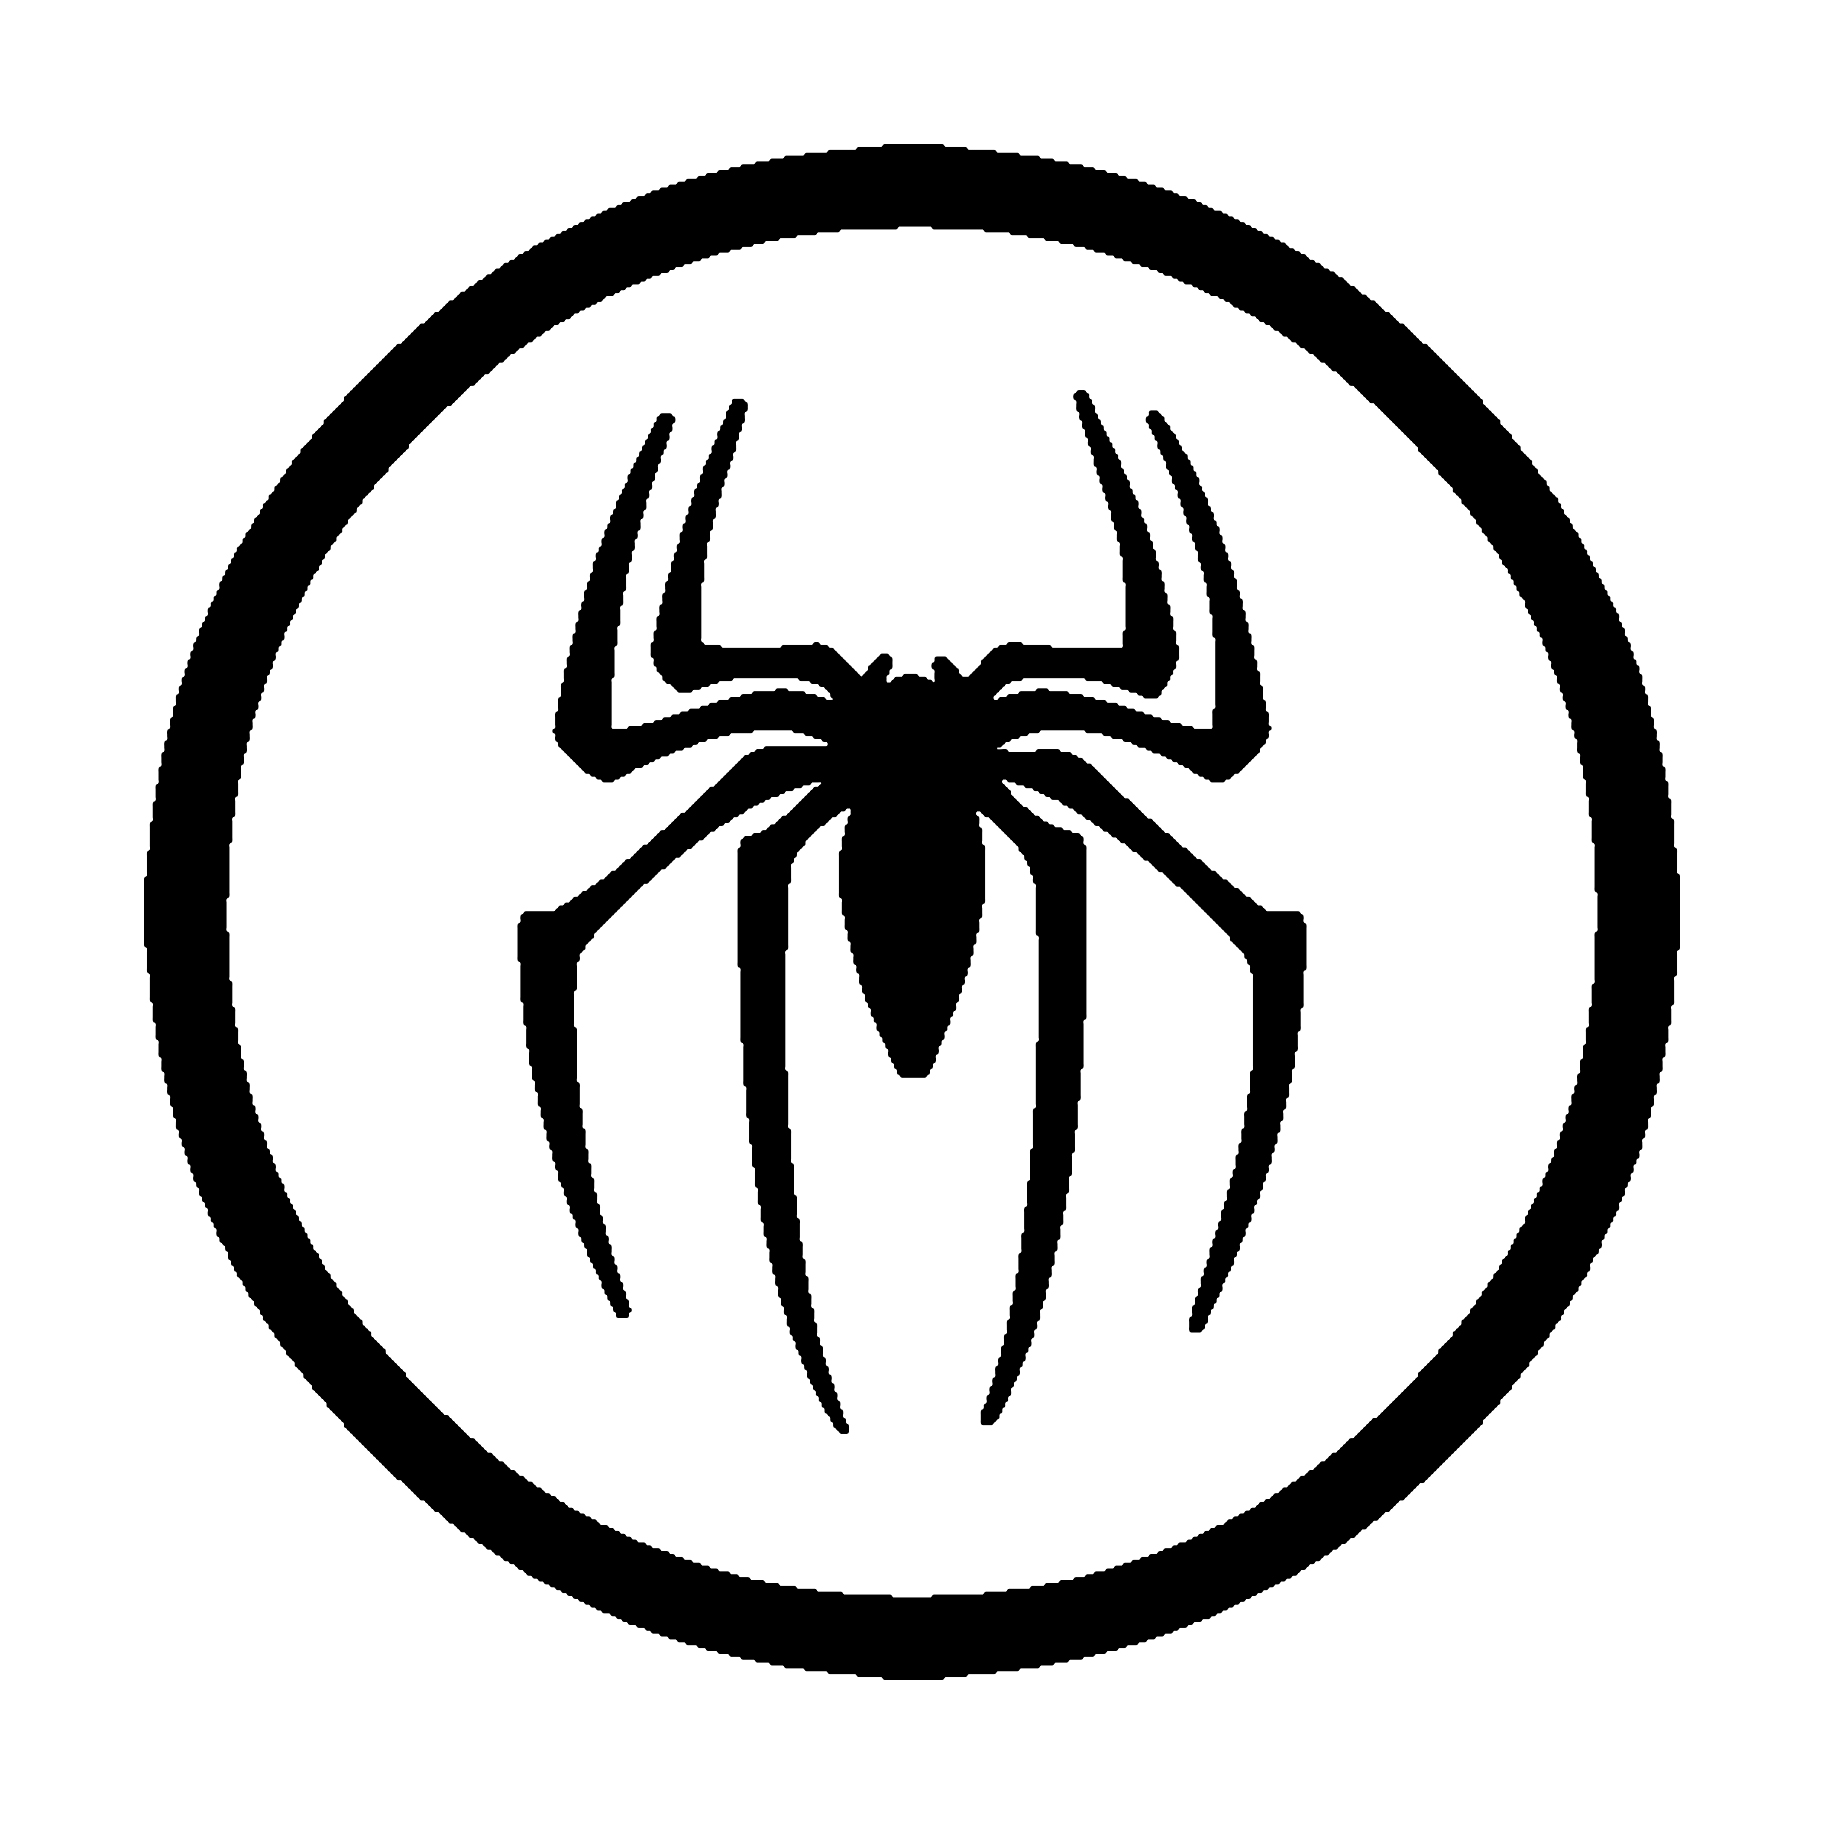 Символ паука фото